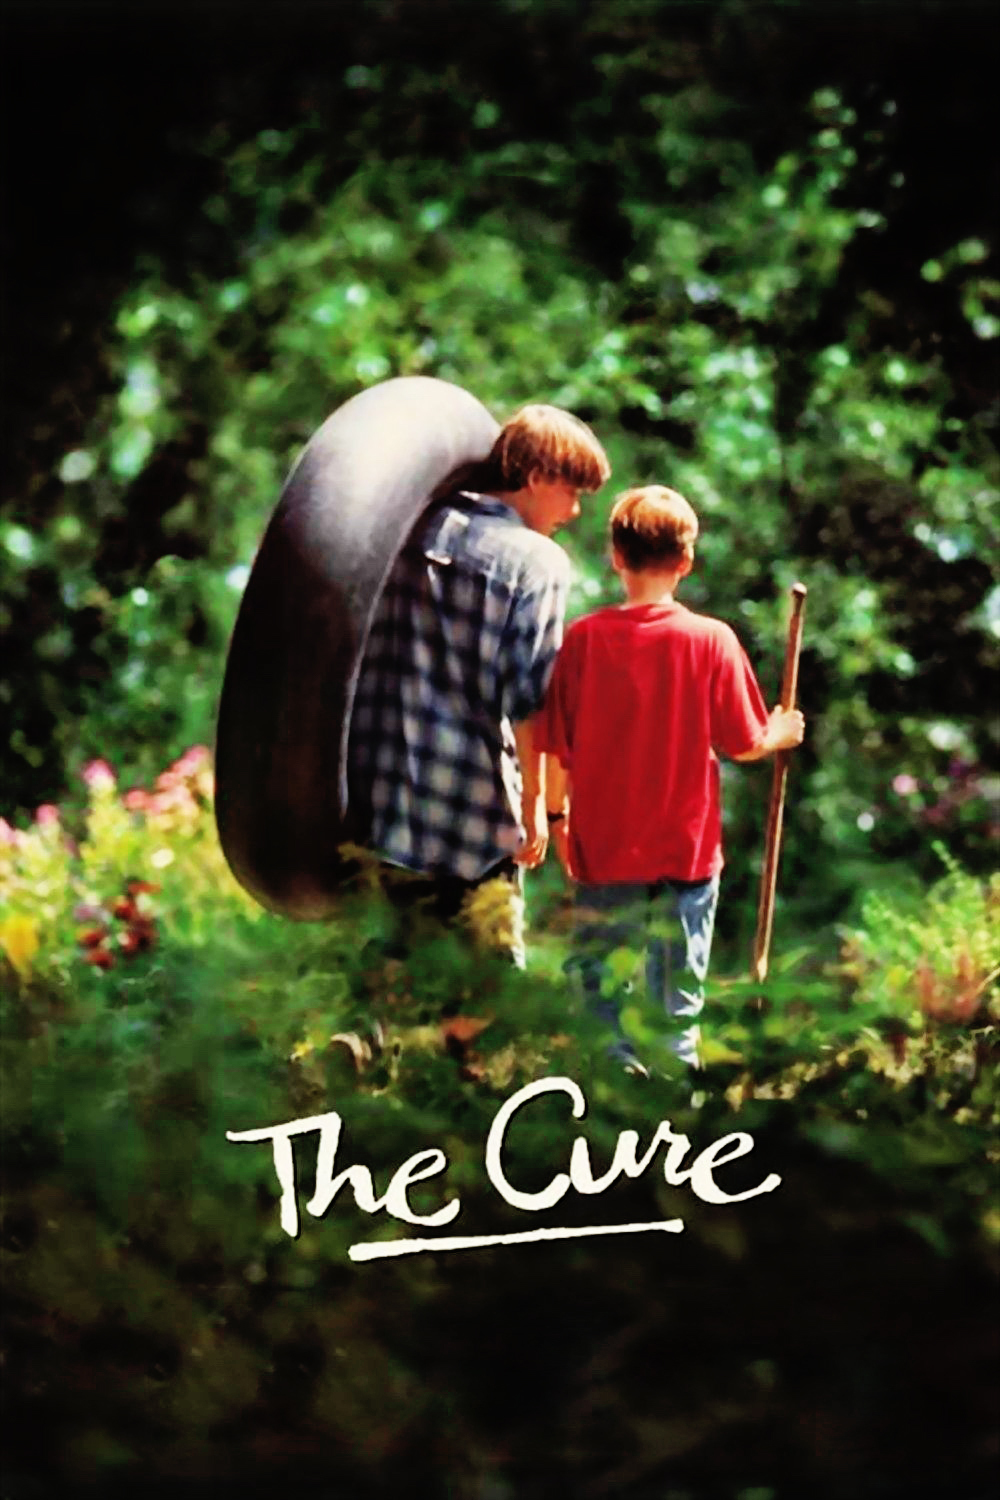 affiche du film The Cure